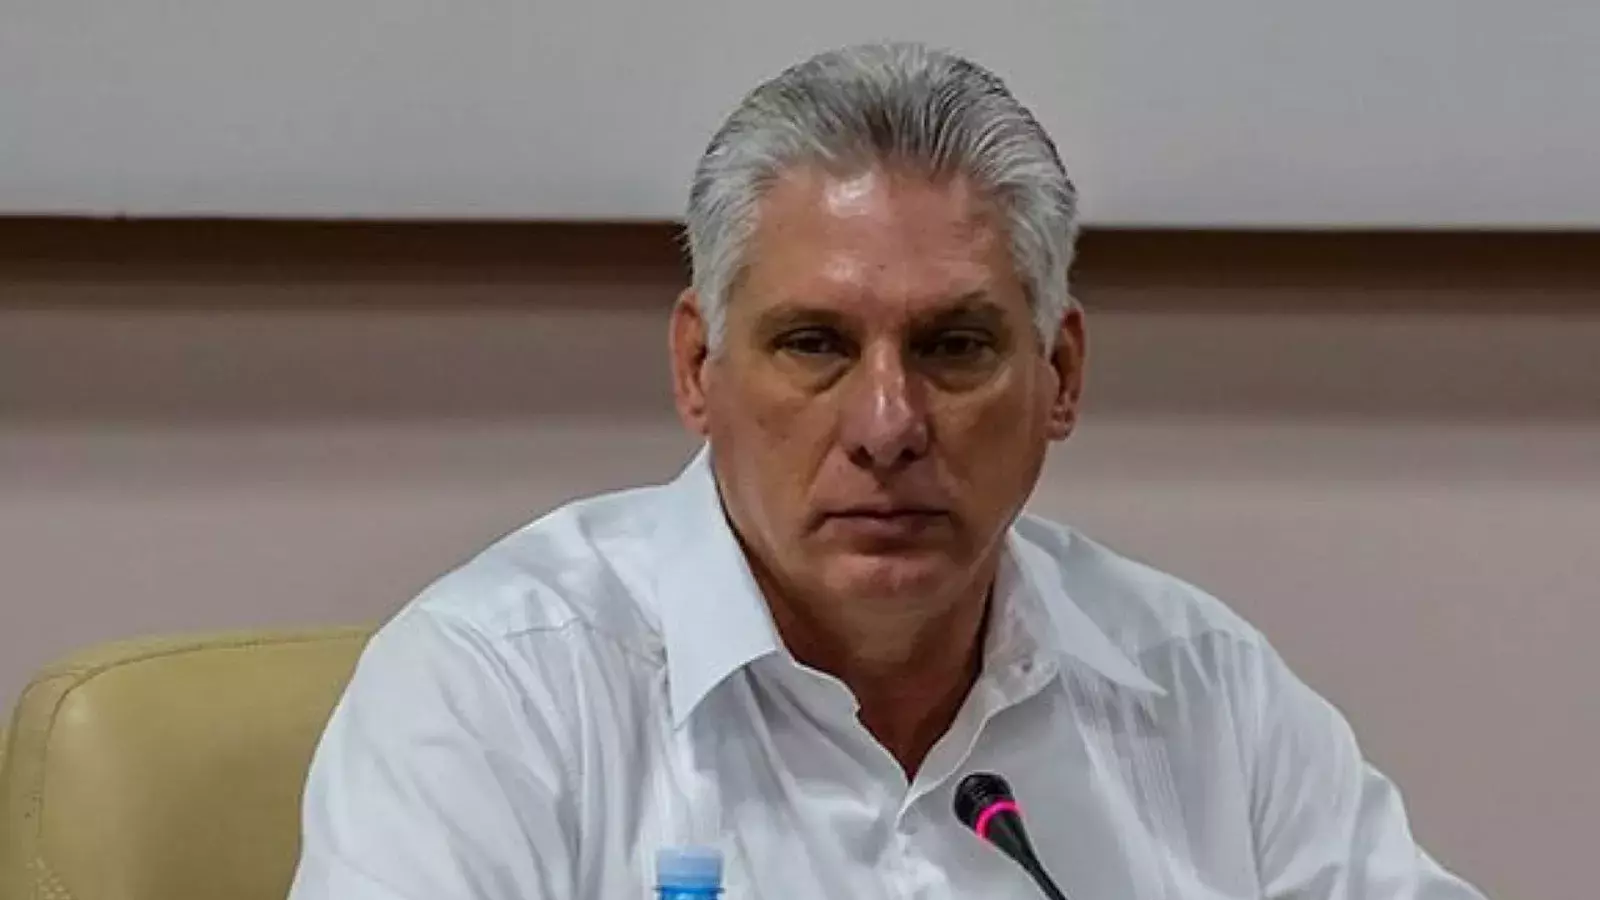 Miguel Díaz Canel, presidente designado de Cuba.